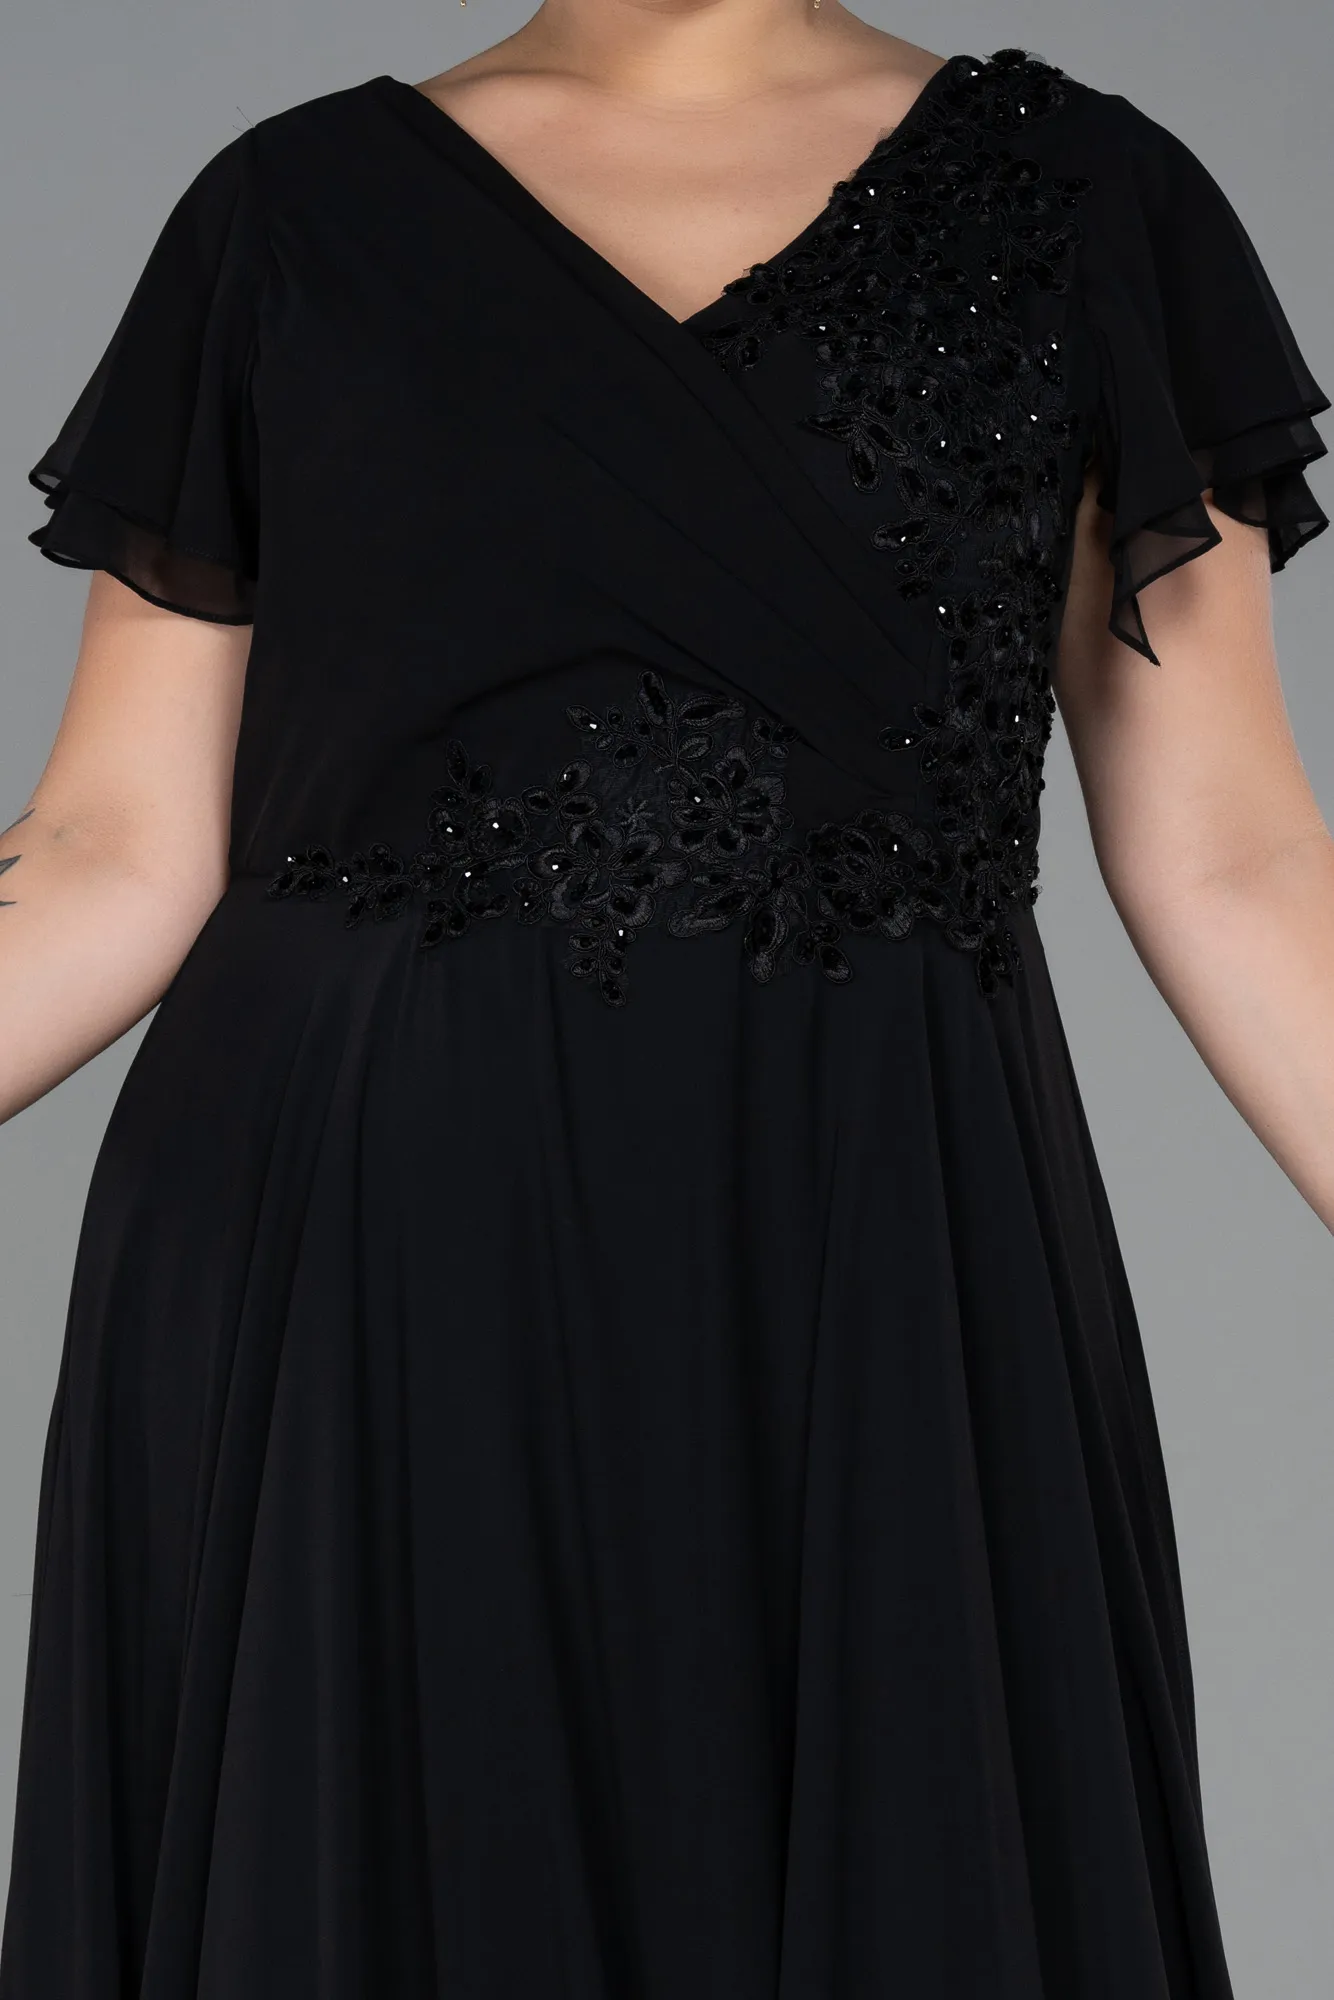 Black-Long Chiffon Plus Size Evening Dress ABU2576